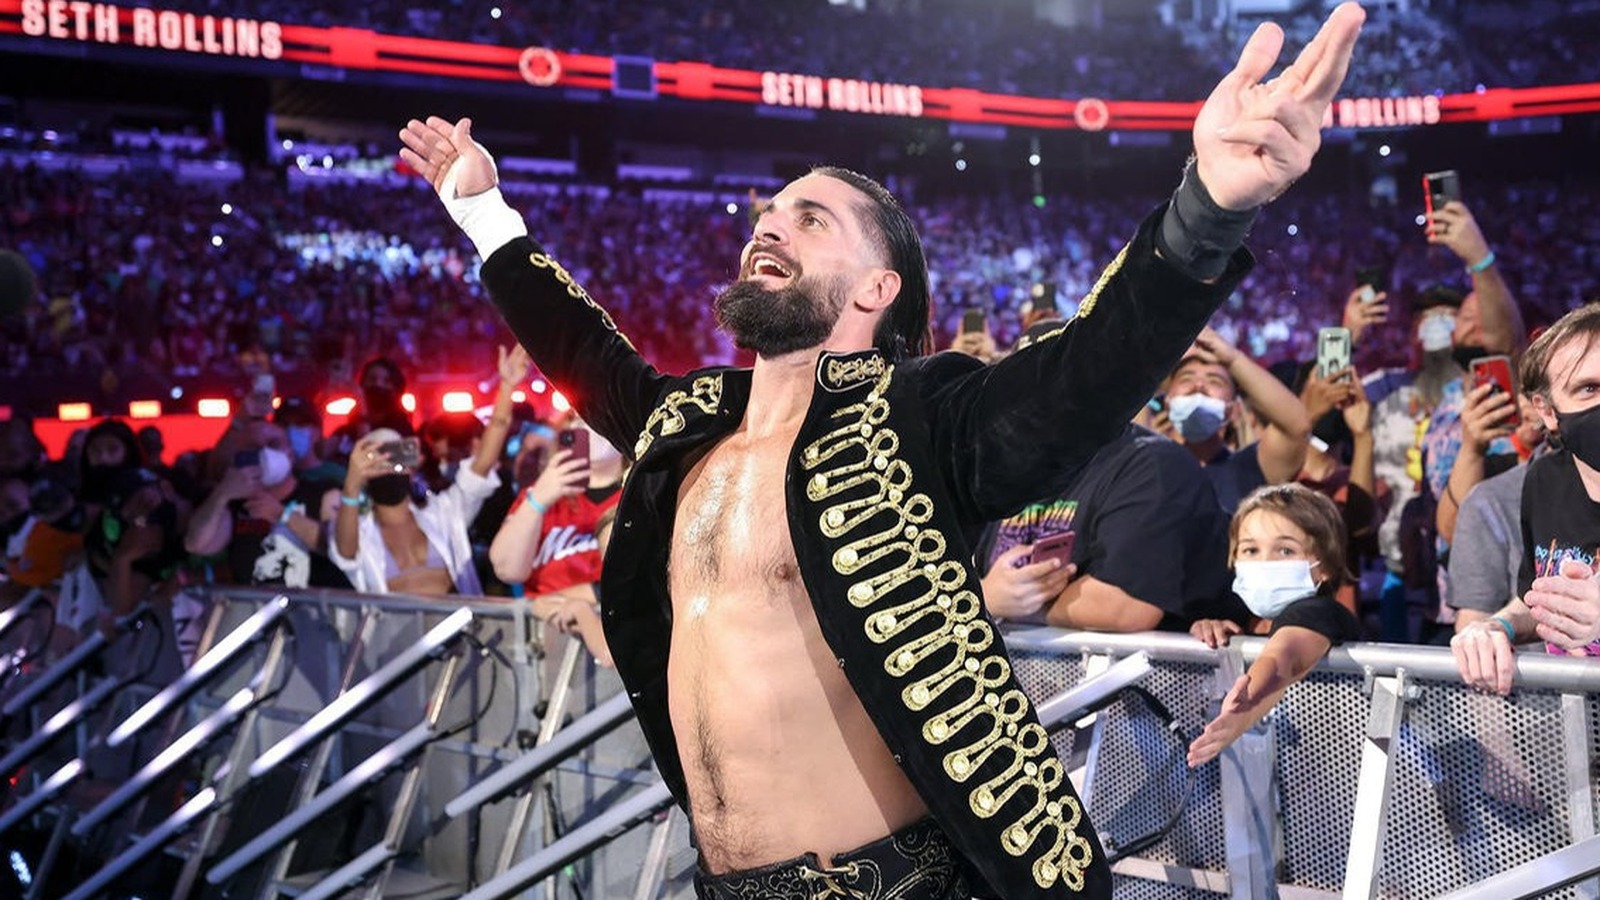 Rhodes, Rollins y otros considerados los principales vendedores de mercancías de la WWE